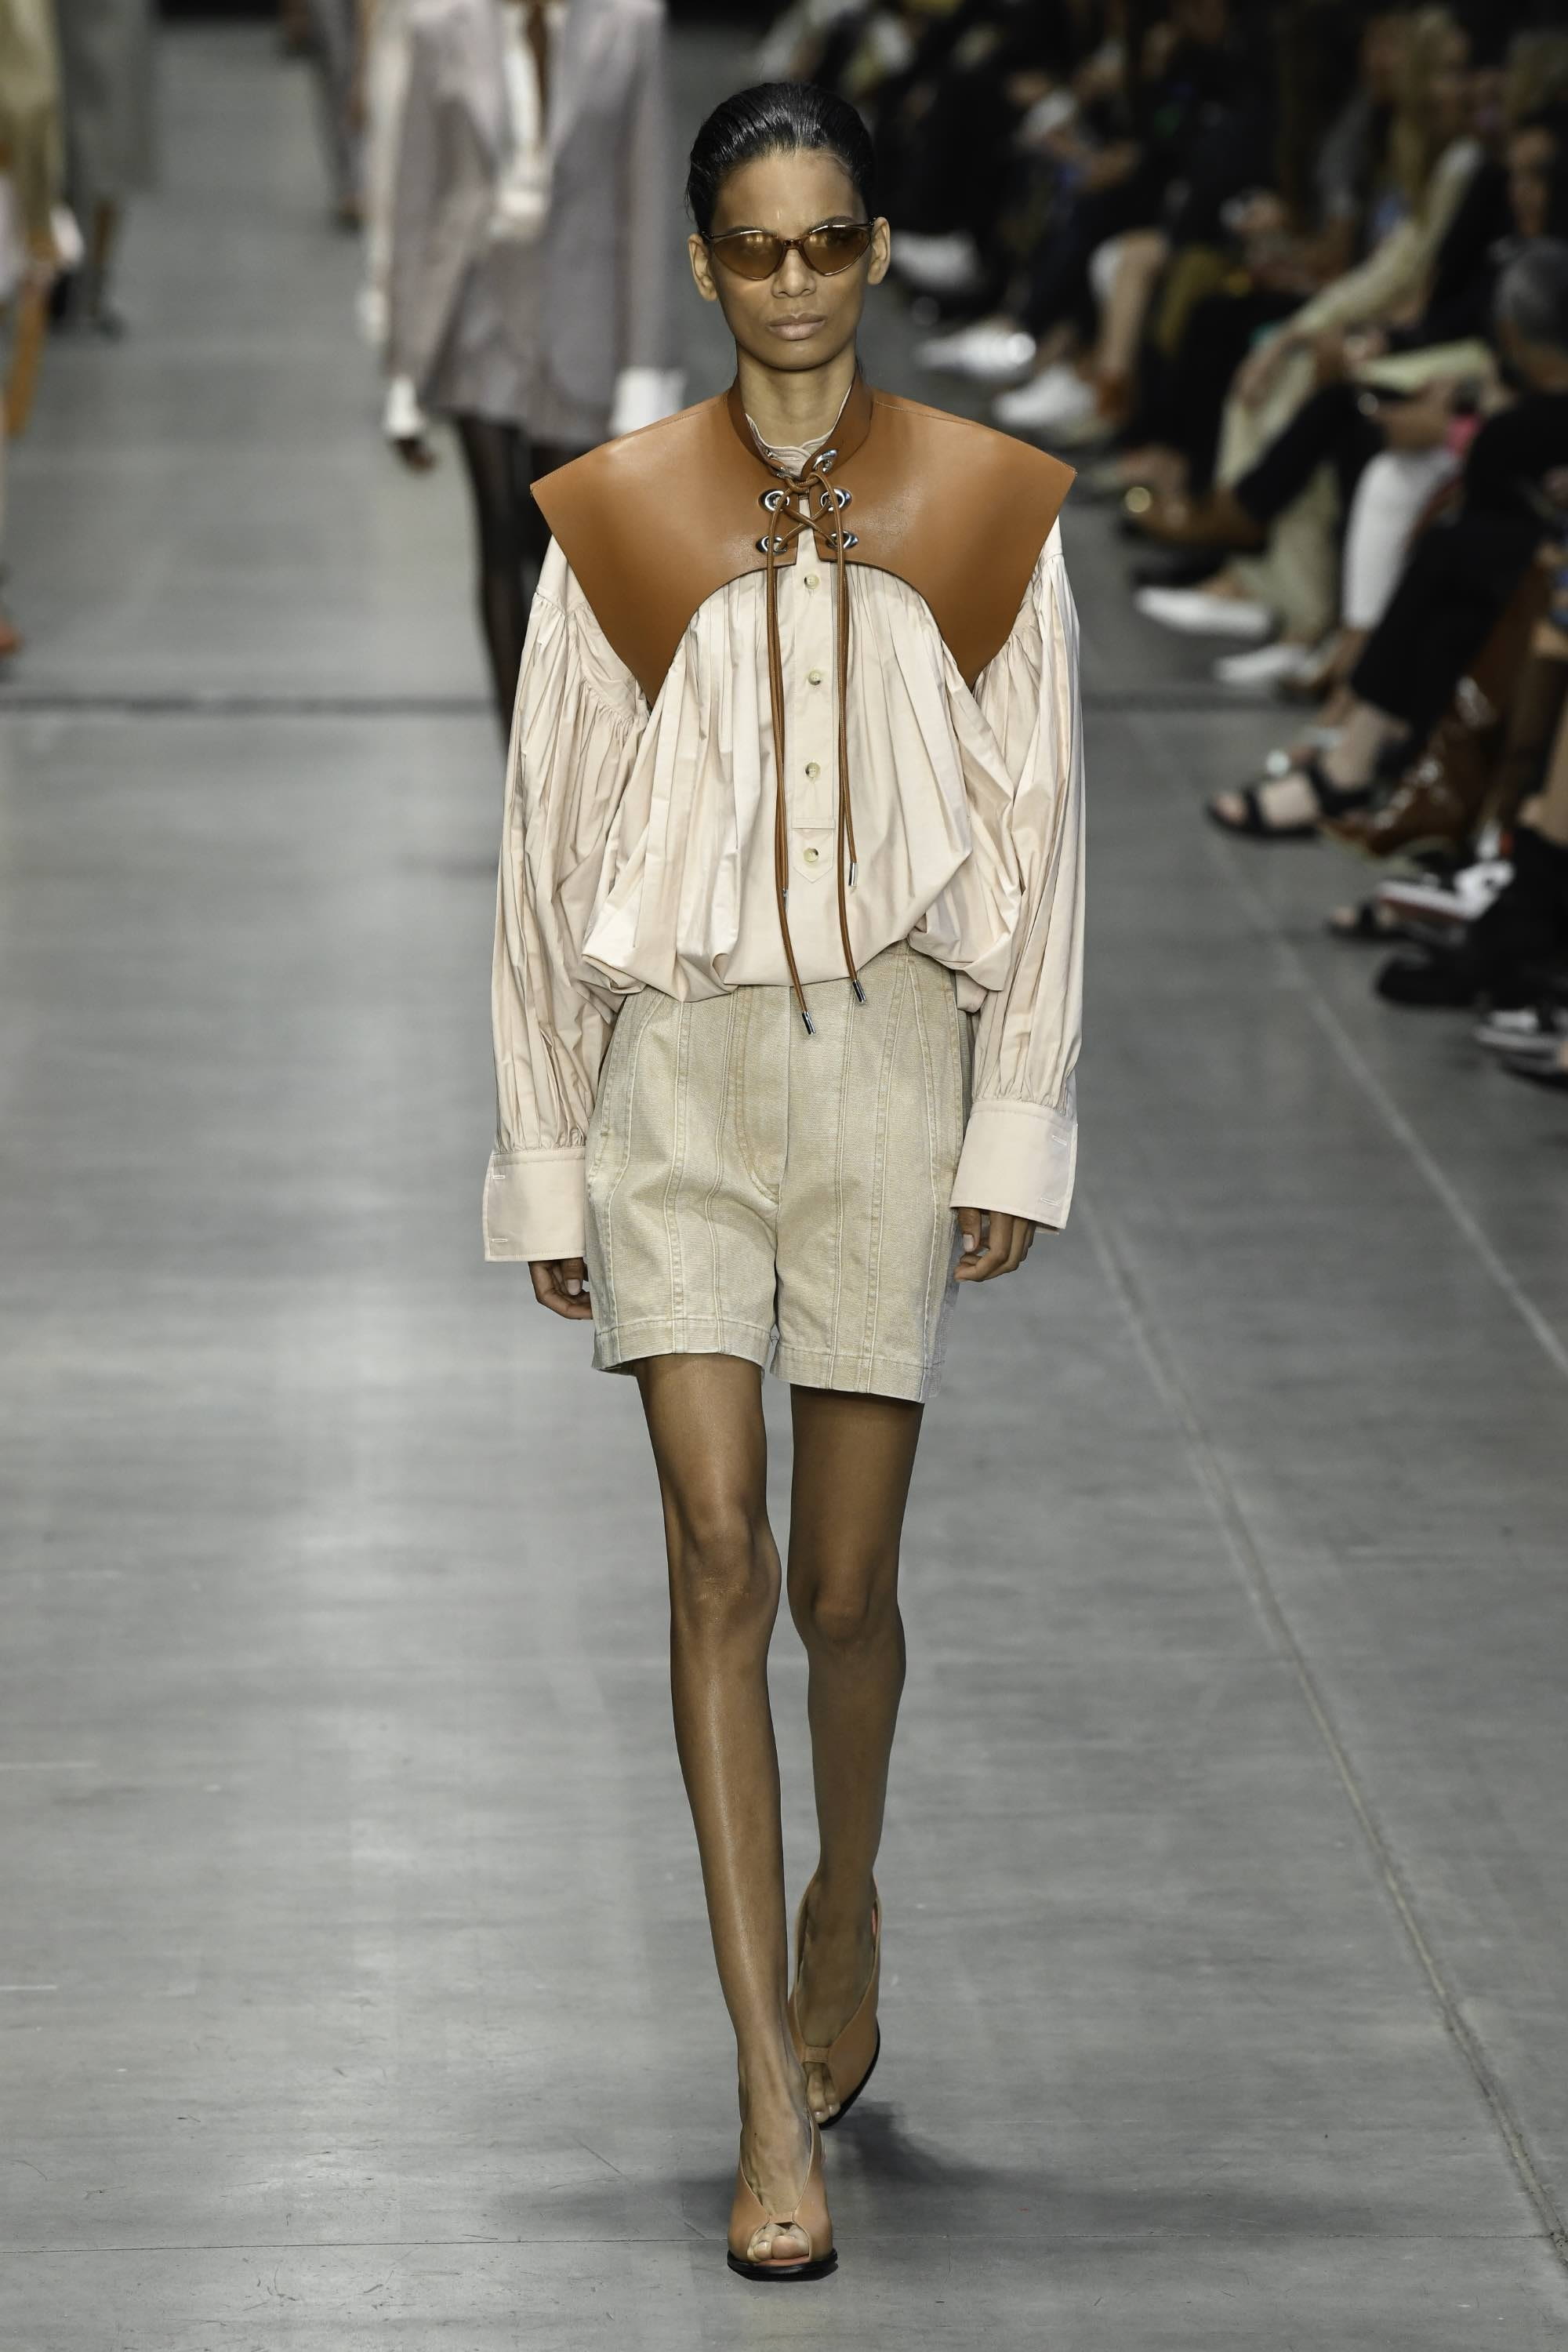 Louis Vuitton SS20 menswear #39 - Tagwalk: The Fashion Search Engine